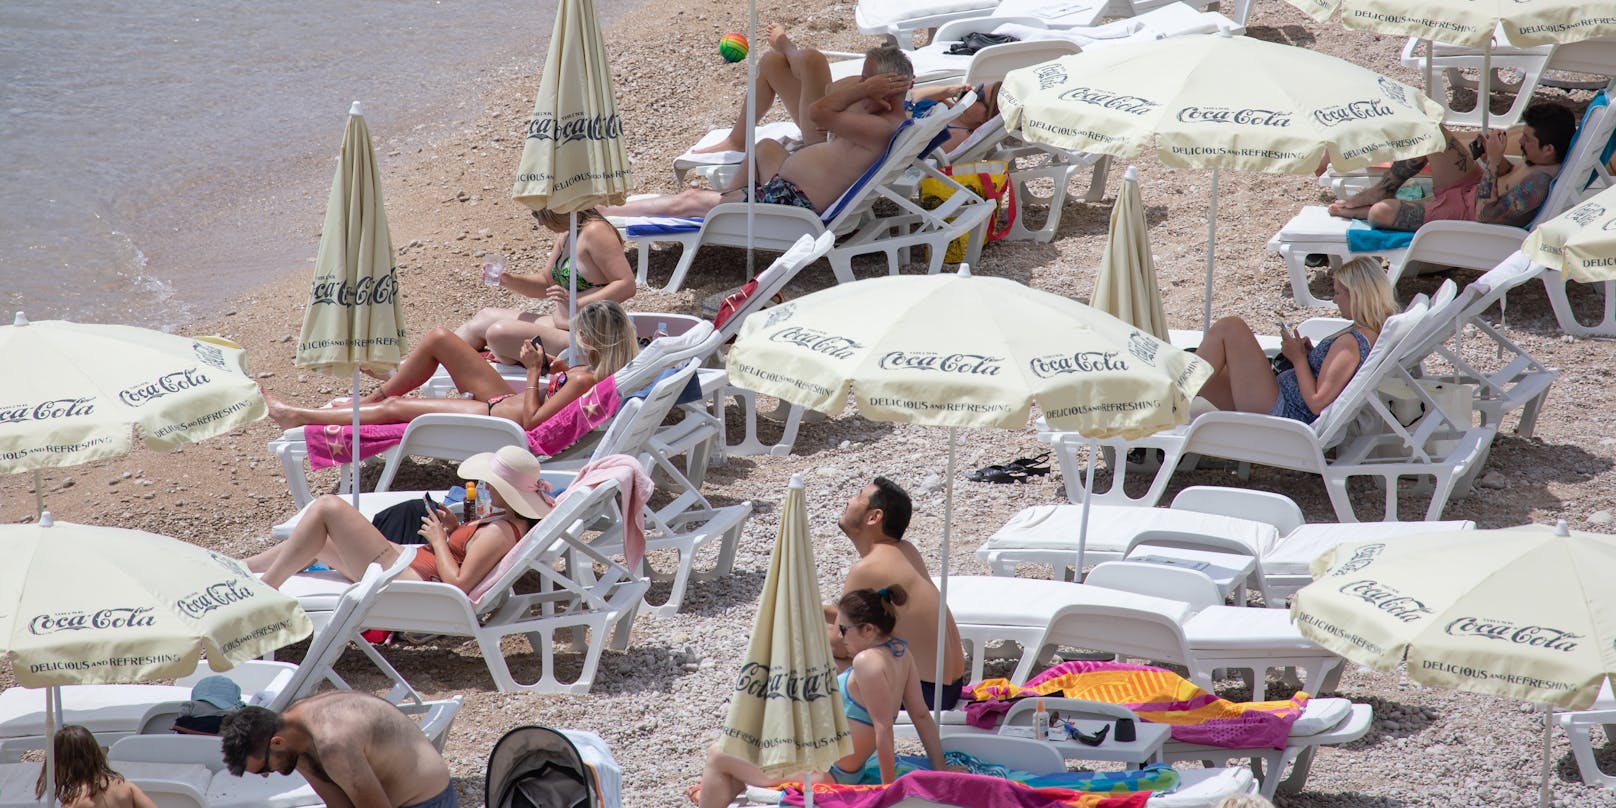 Touristen beim Sonnenbaden in Kroatien.